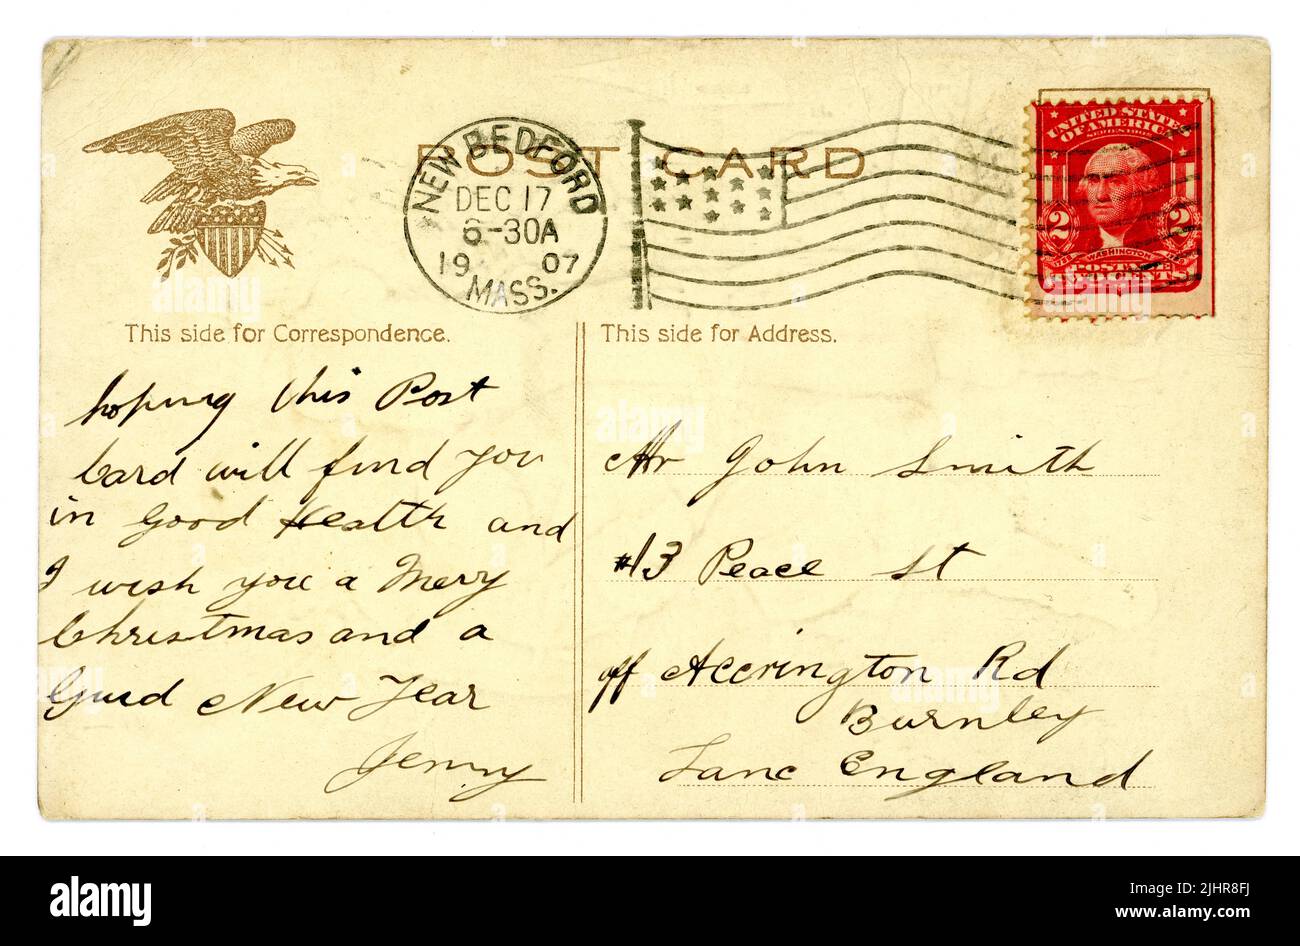 Inverse de l'époque édouardienne originale carte postale américaine de Noël, bon exemple de 2 cent George Washington timbre, avec des étoiles et des bandes drapeau, Eagle design, posté à une adresse en Angleterre, 17 décembre 1907. Banque D'Images